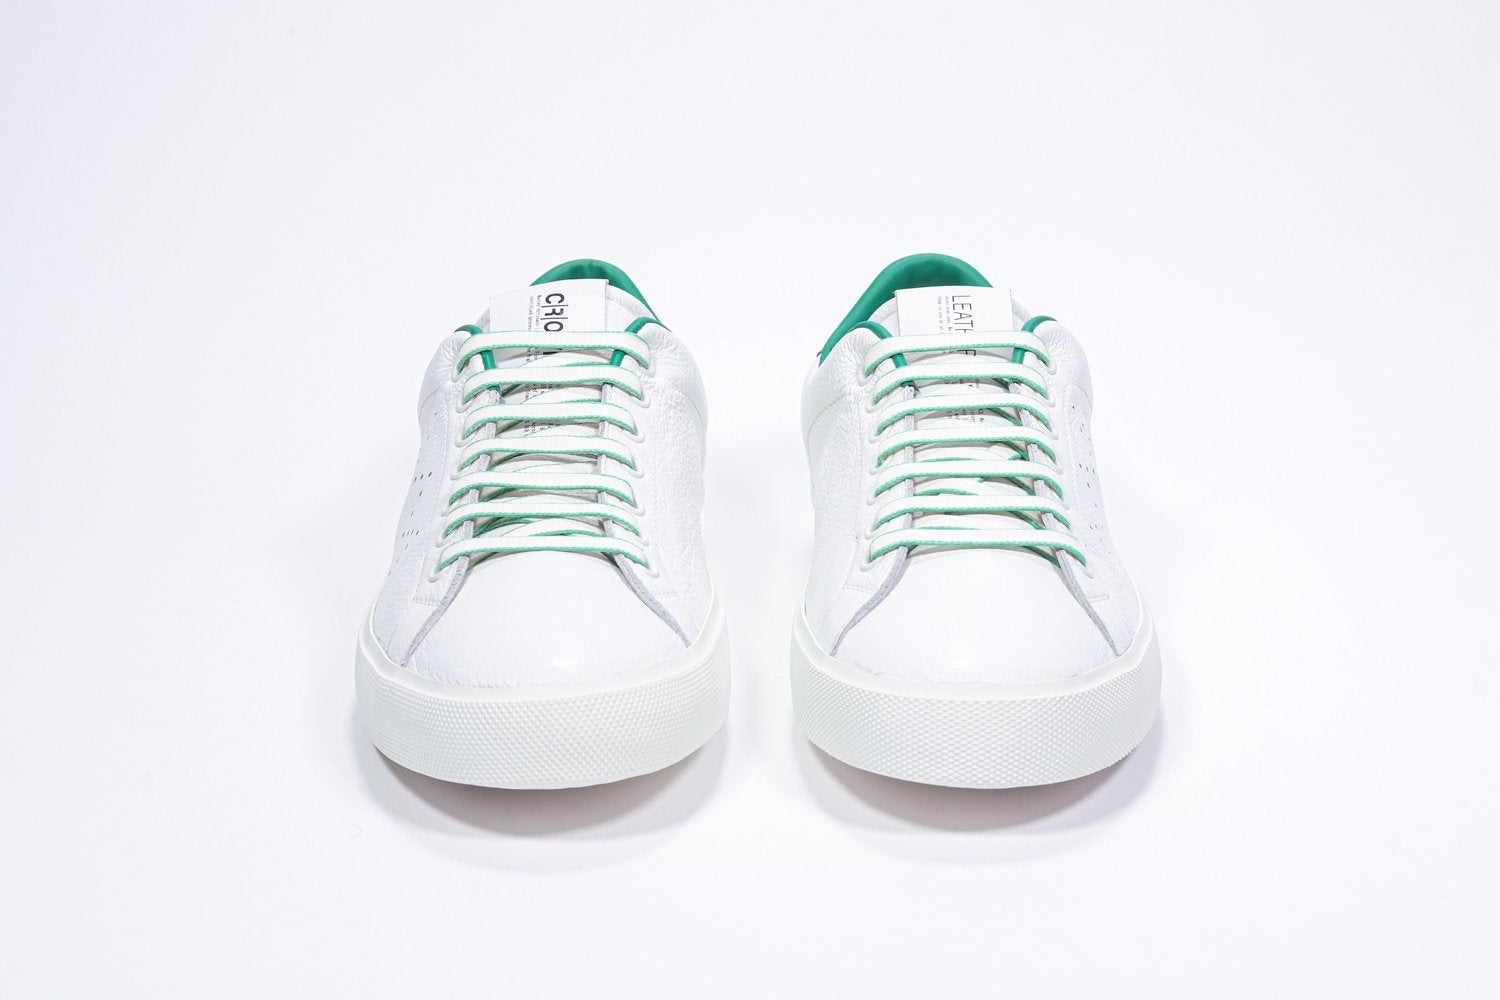 Vue de face de la chaussure blanche sneaker avec des détails verts et le logo perforé de la couronne sur la tige. Tige en cuir et semelle en caoutchouc blanc.